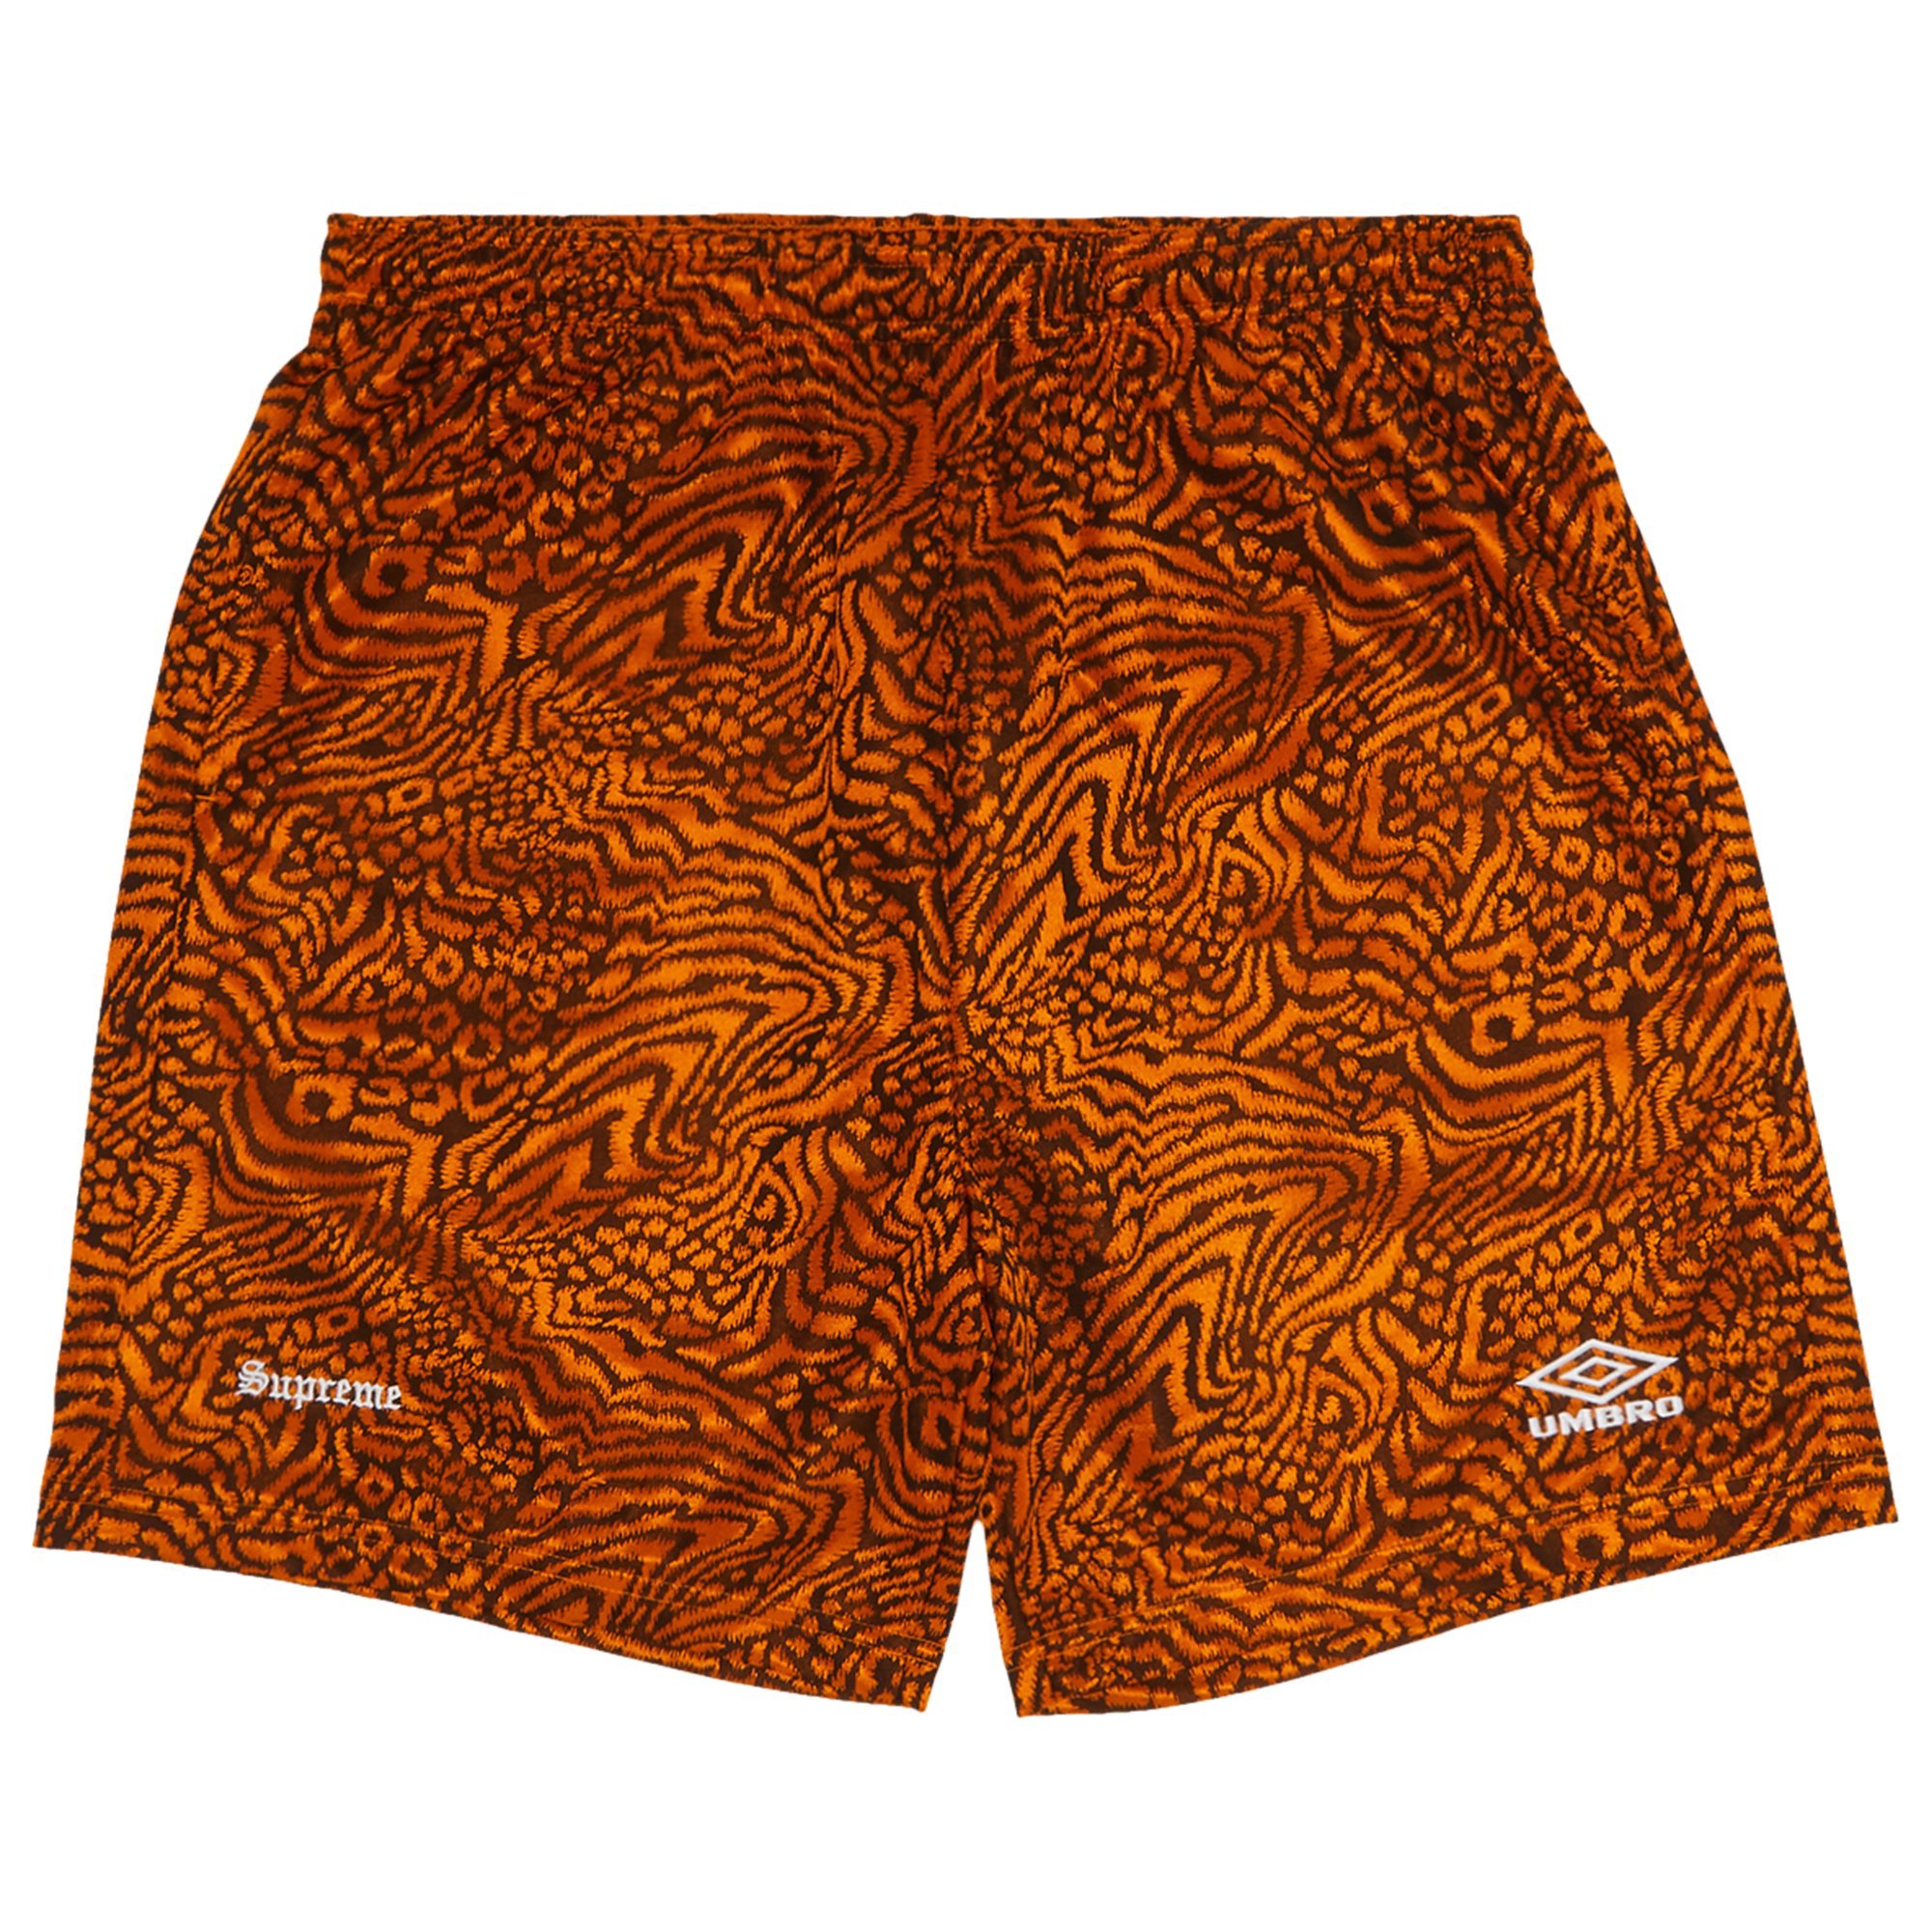 Supreme x Umbro Jacquard Animal Print Soccer Short 'Orange'